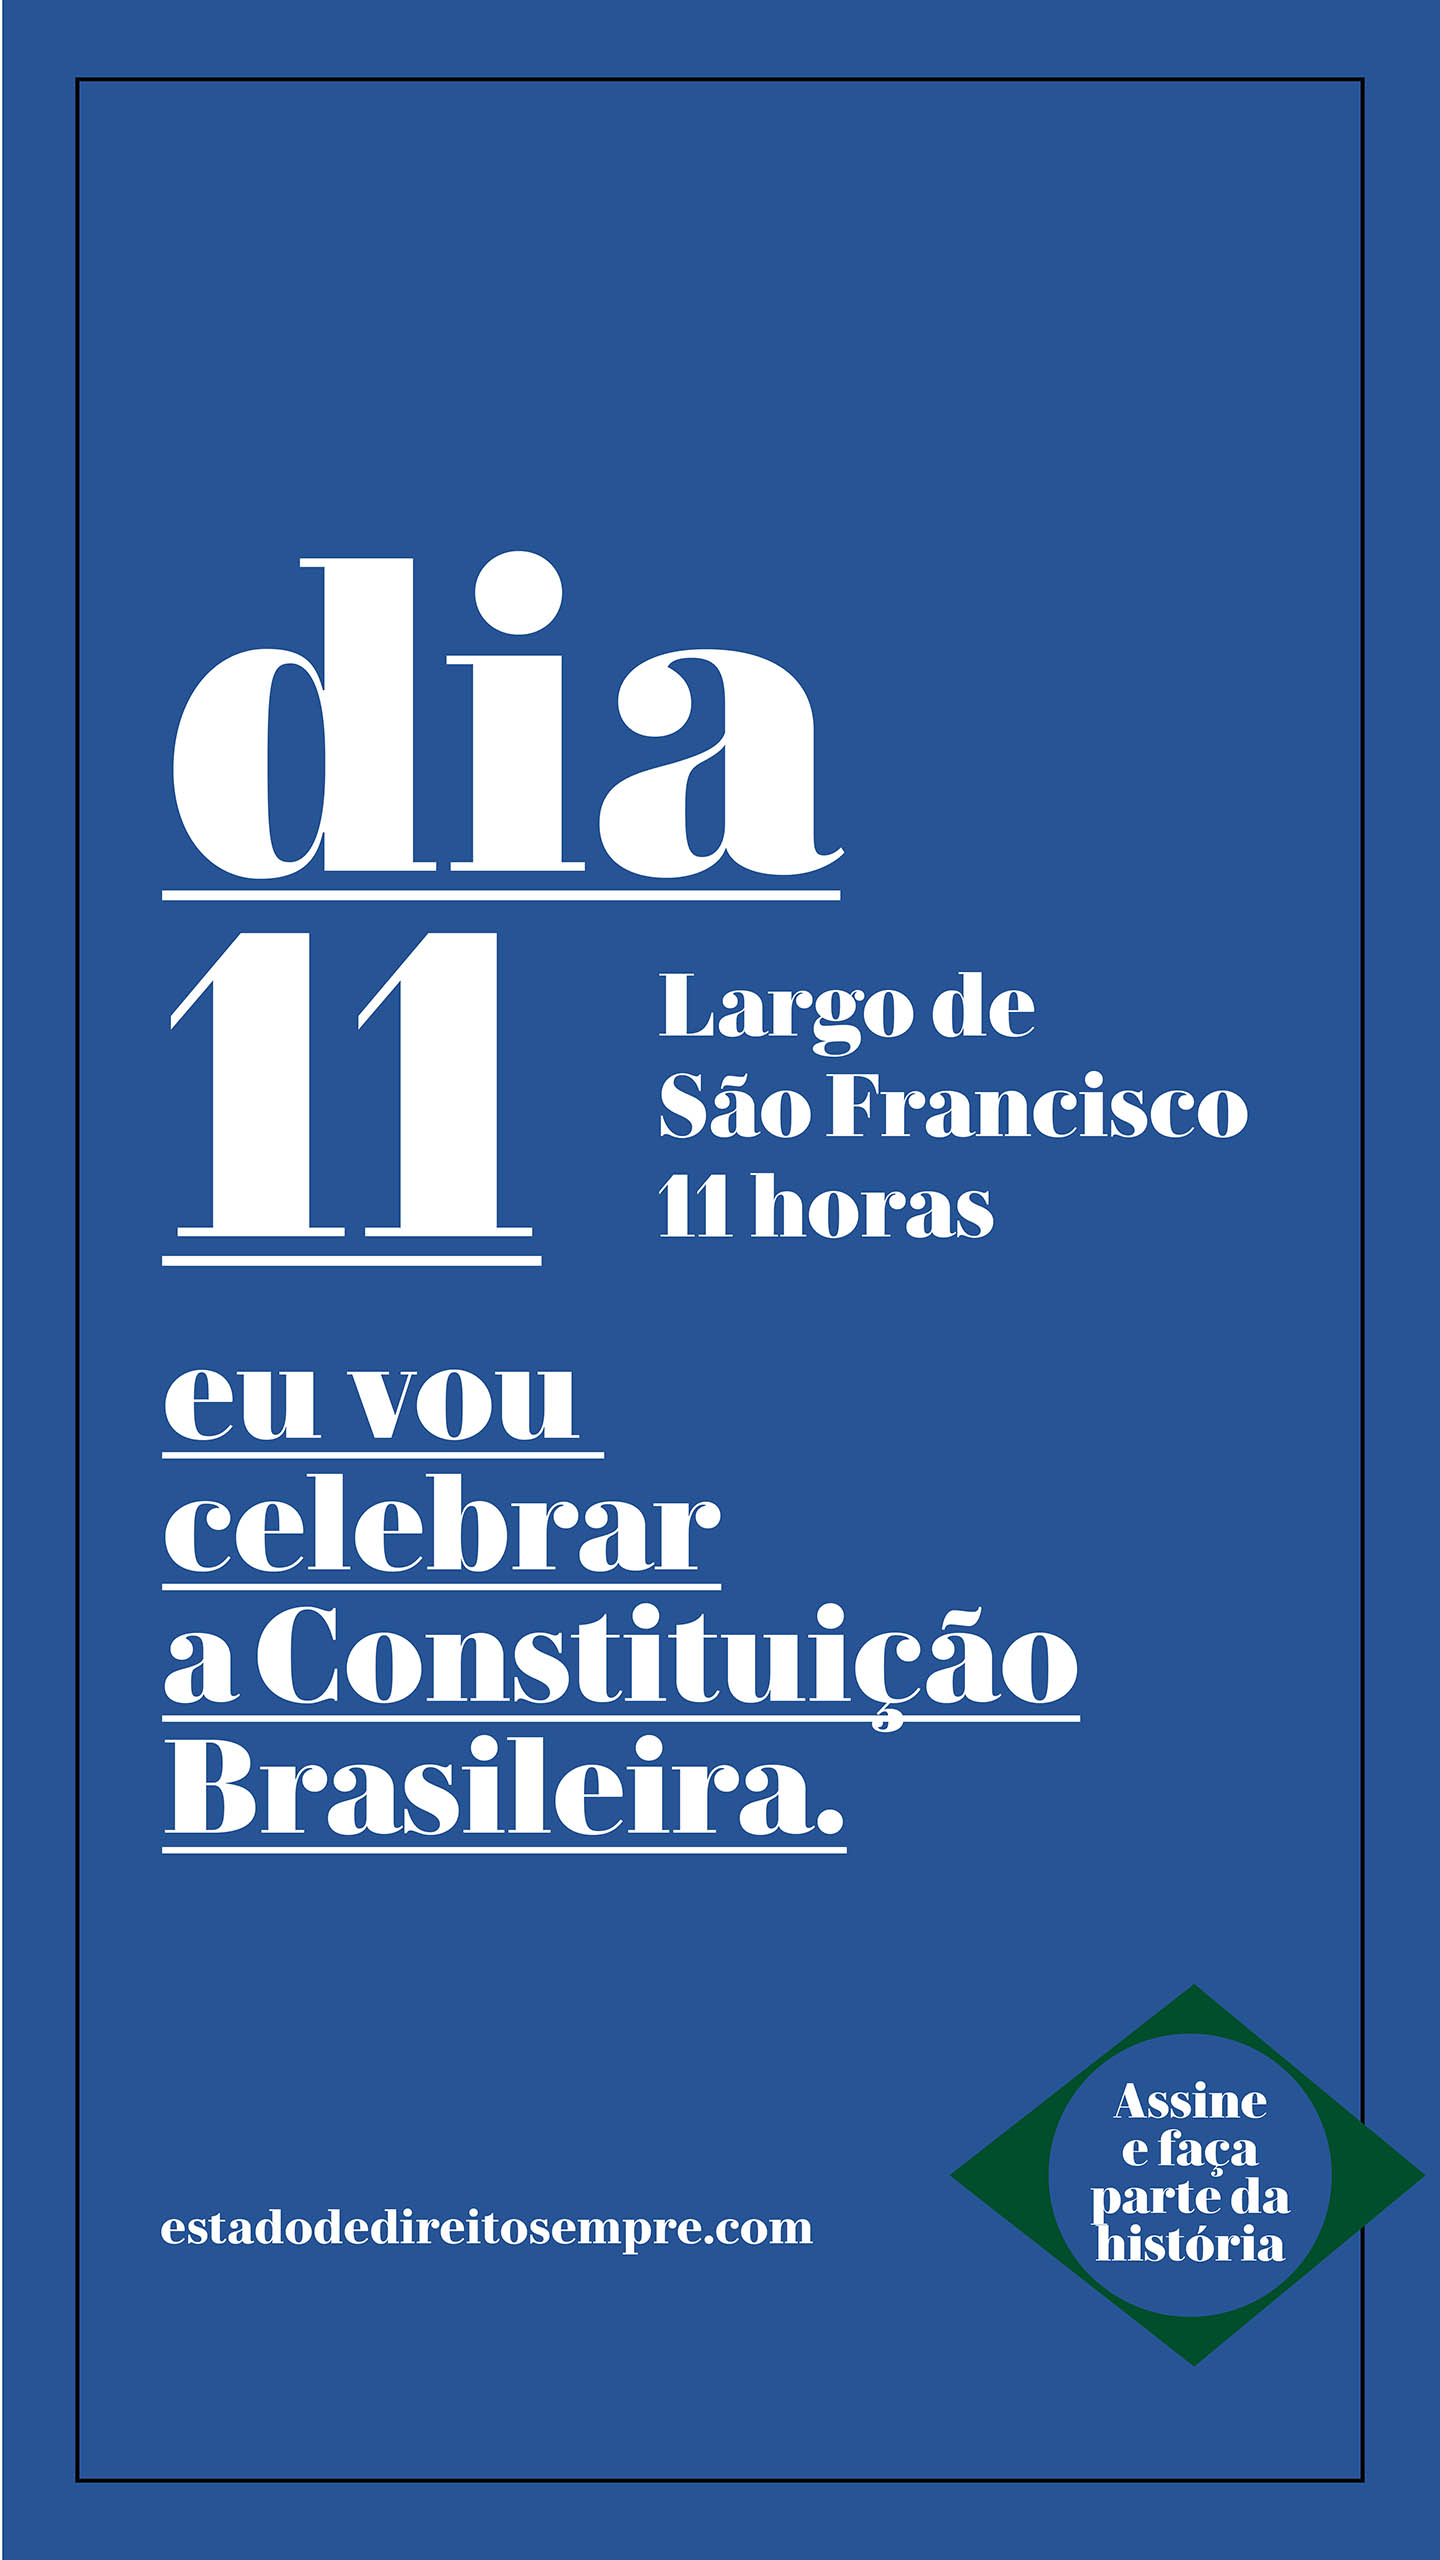 Largo de São Francisco. Dia 11. 11 horas. Eu vou celebrar a Constituição Brasileira.